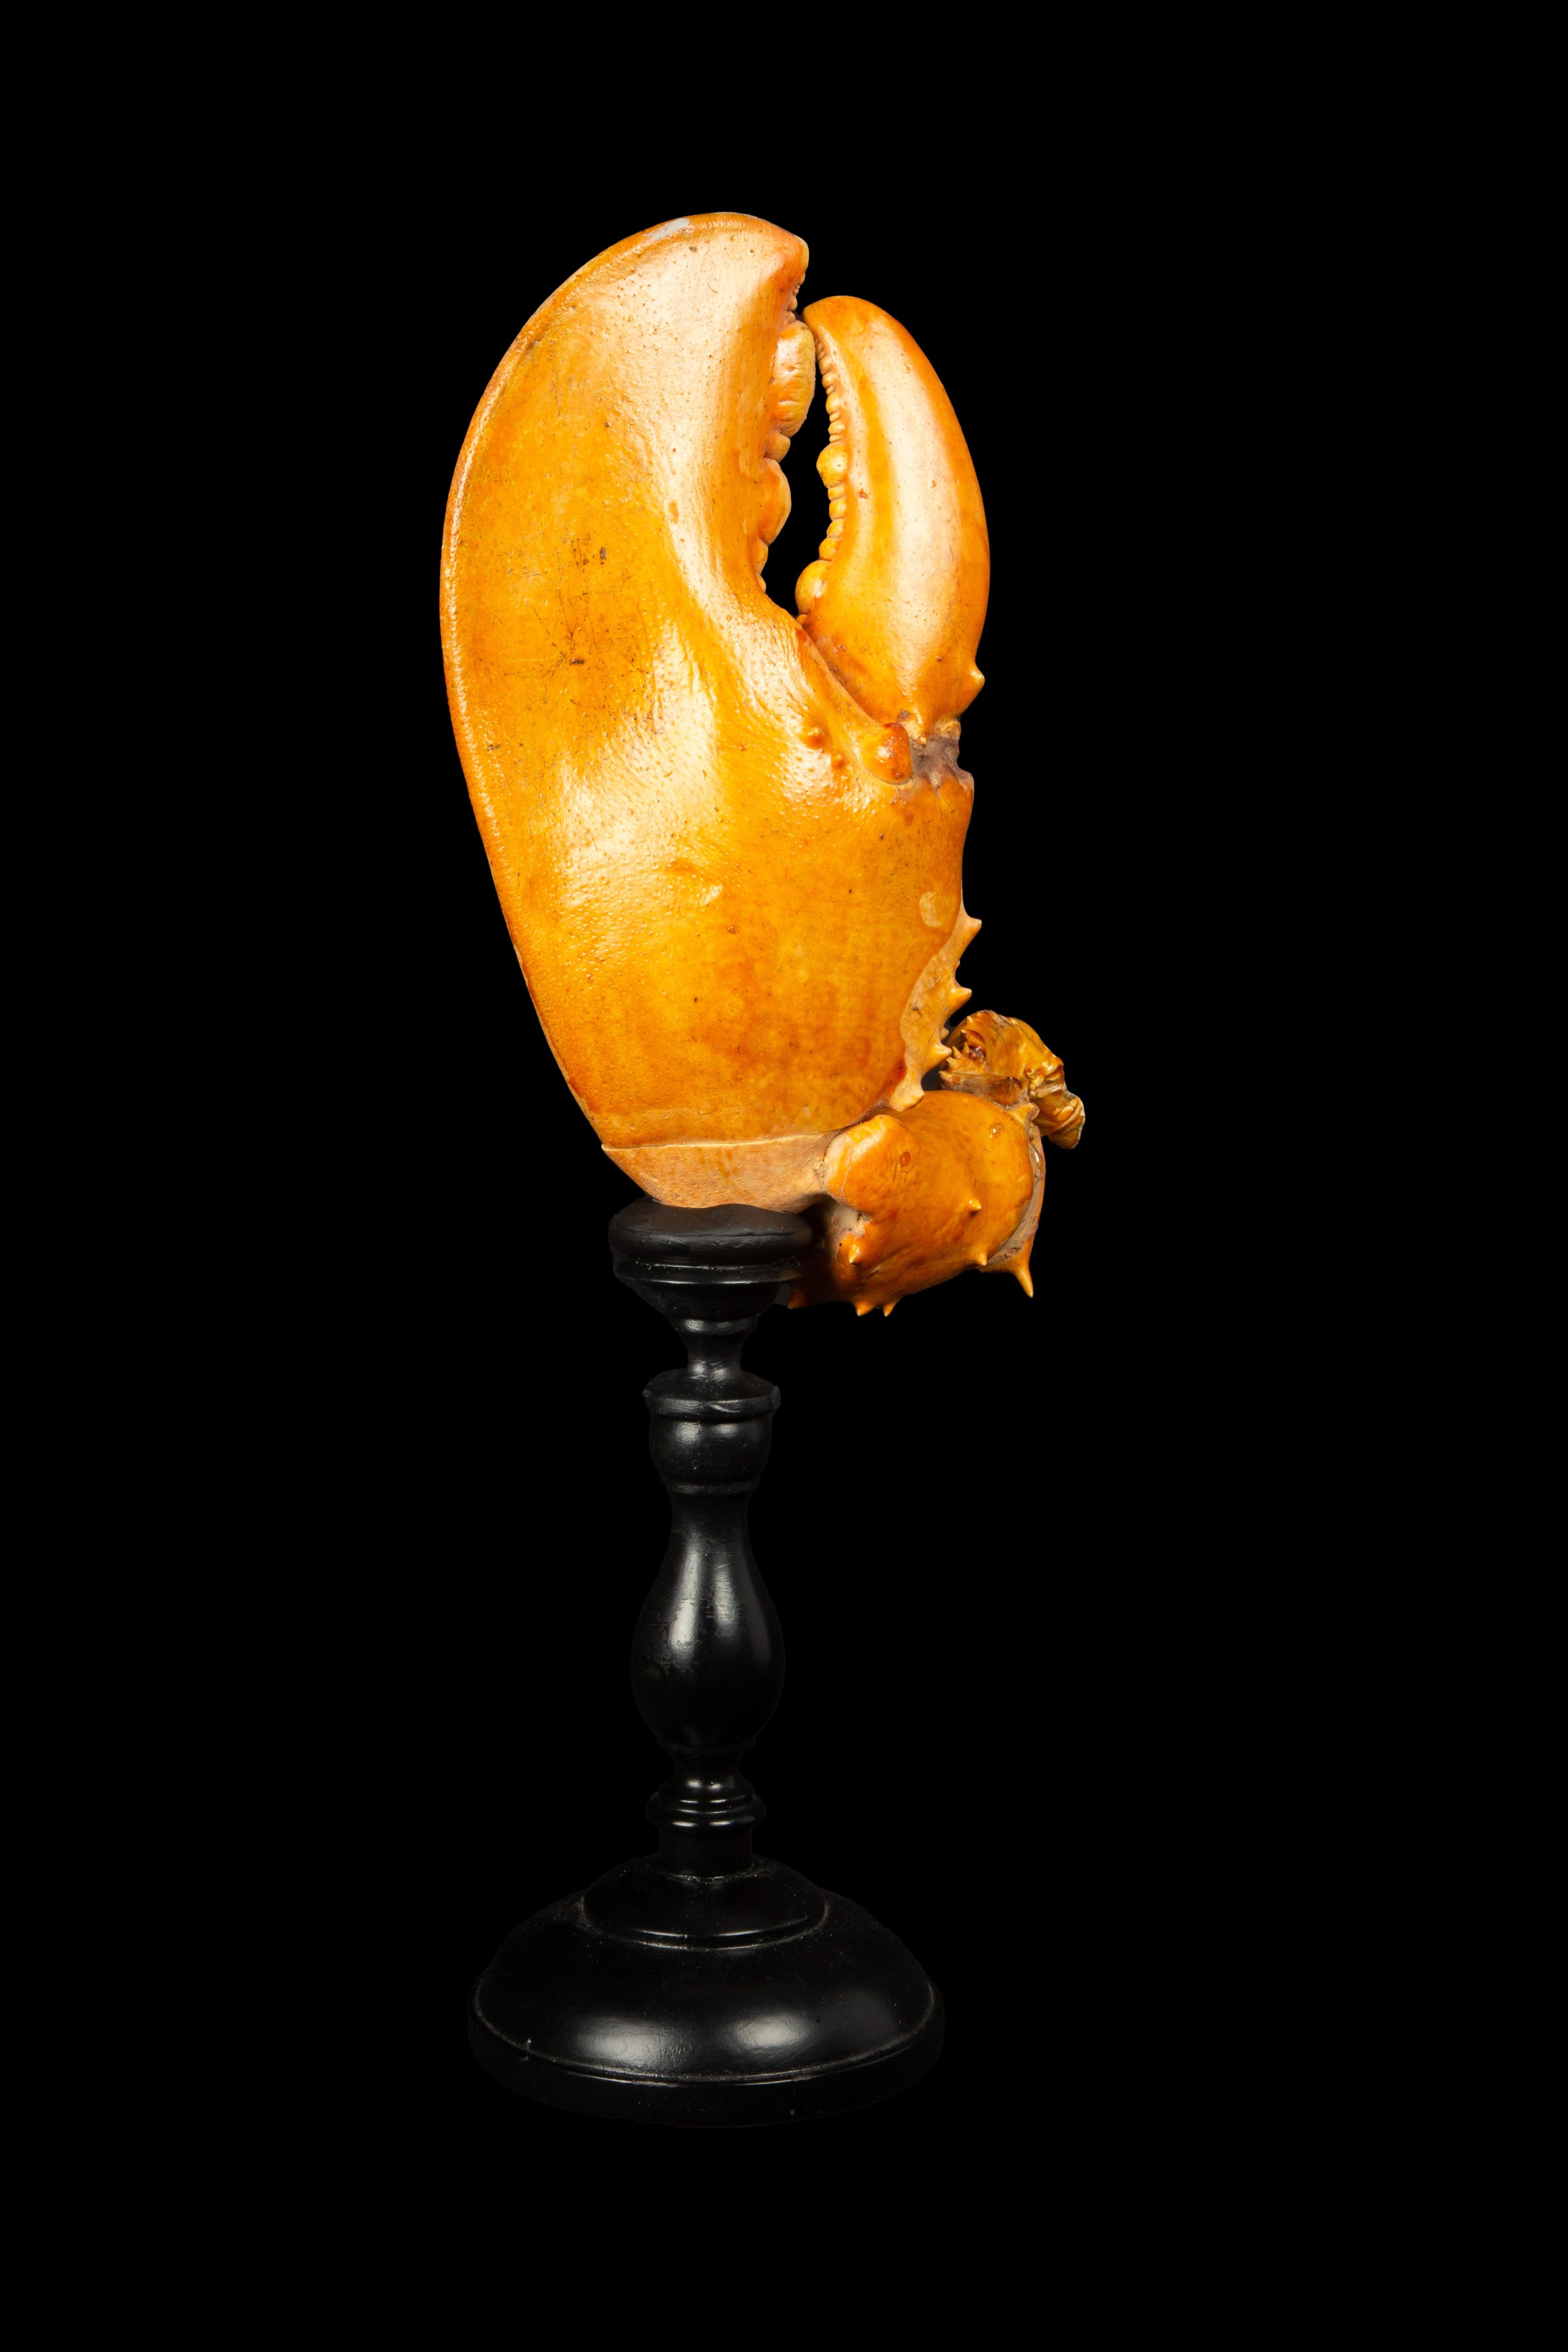 Grande pince de homard montée : Présentant une authentique pince de homard montée sur un socle noir italien tourné à la main, cette œuvre d'art respire l'élégance et le charme. D'une hauteur impressionnante de 17 pouces, il met en valeur la beauté